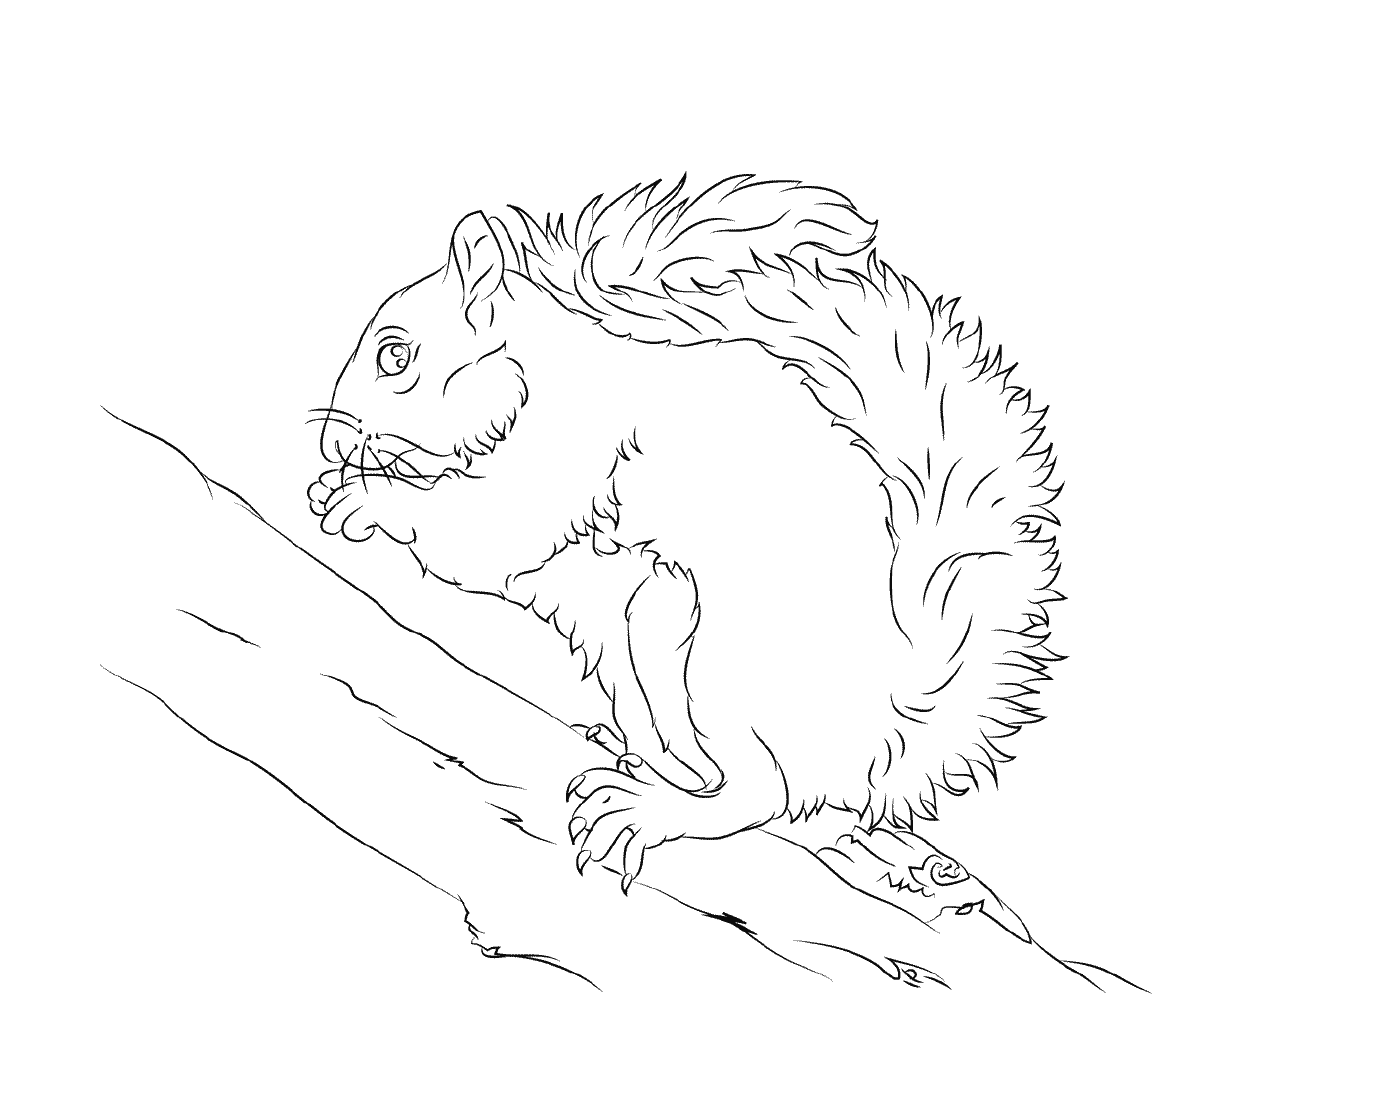   L'écureuil gris mange une noix 